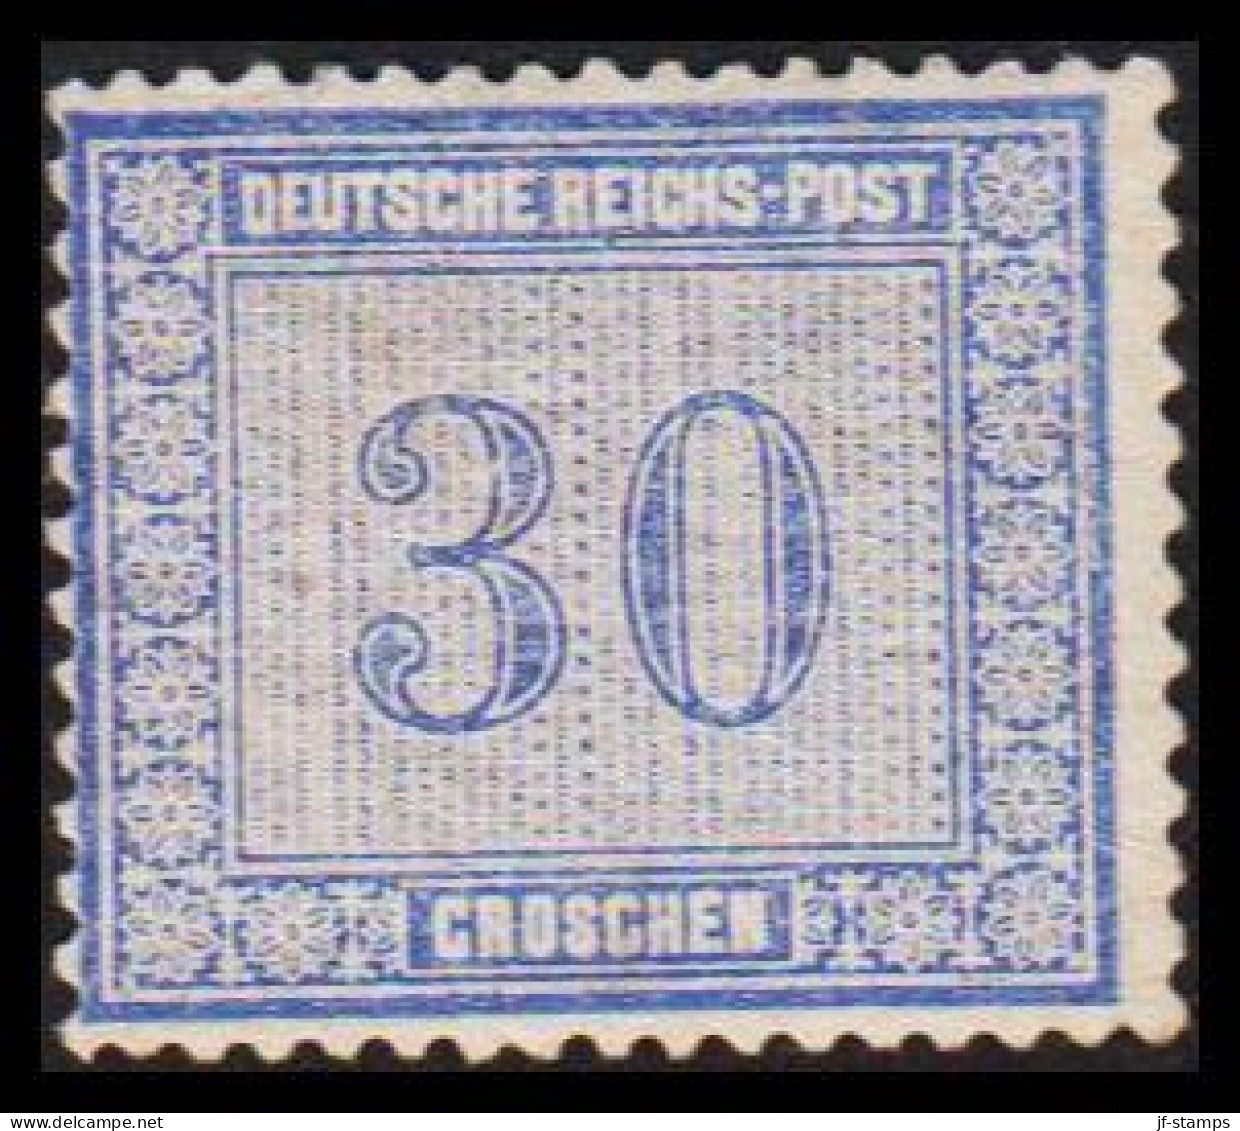 1872. DEUTSCHE REICHS-POST. 30 GROSCHEN. Nice Stamp Hinged, Thin Spot Reverse.  (Michel 13) - JF534008 - Neufs